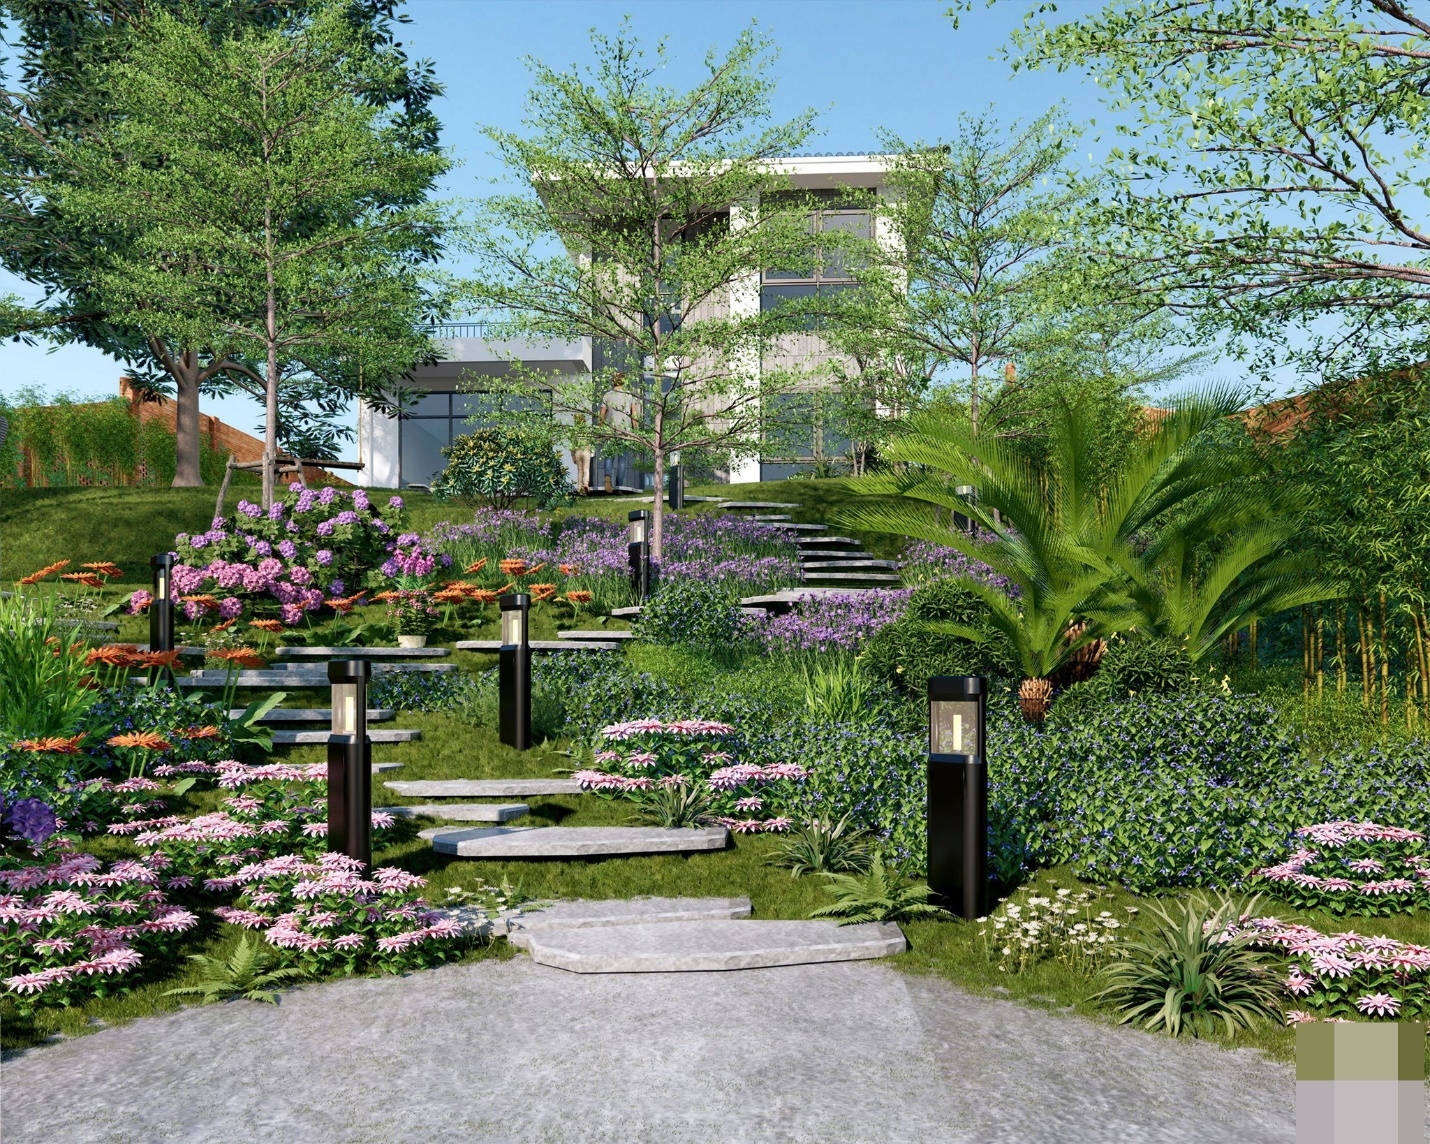 Villa ở trên đồi có view triệu đô, không gian bao phủ hoa cỏ thơm ngát